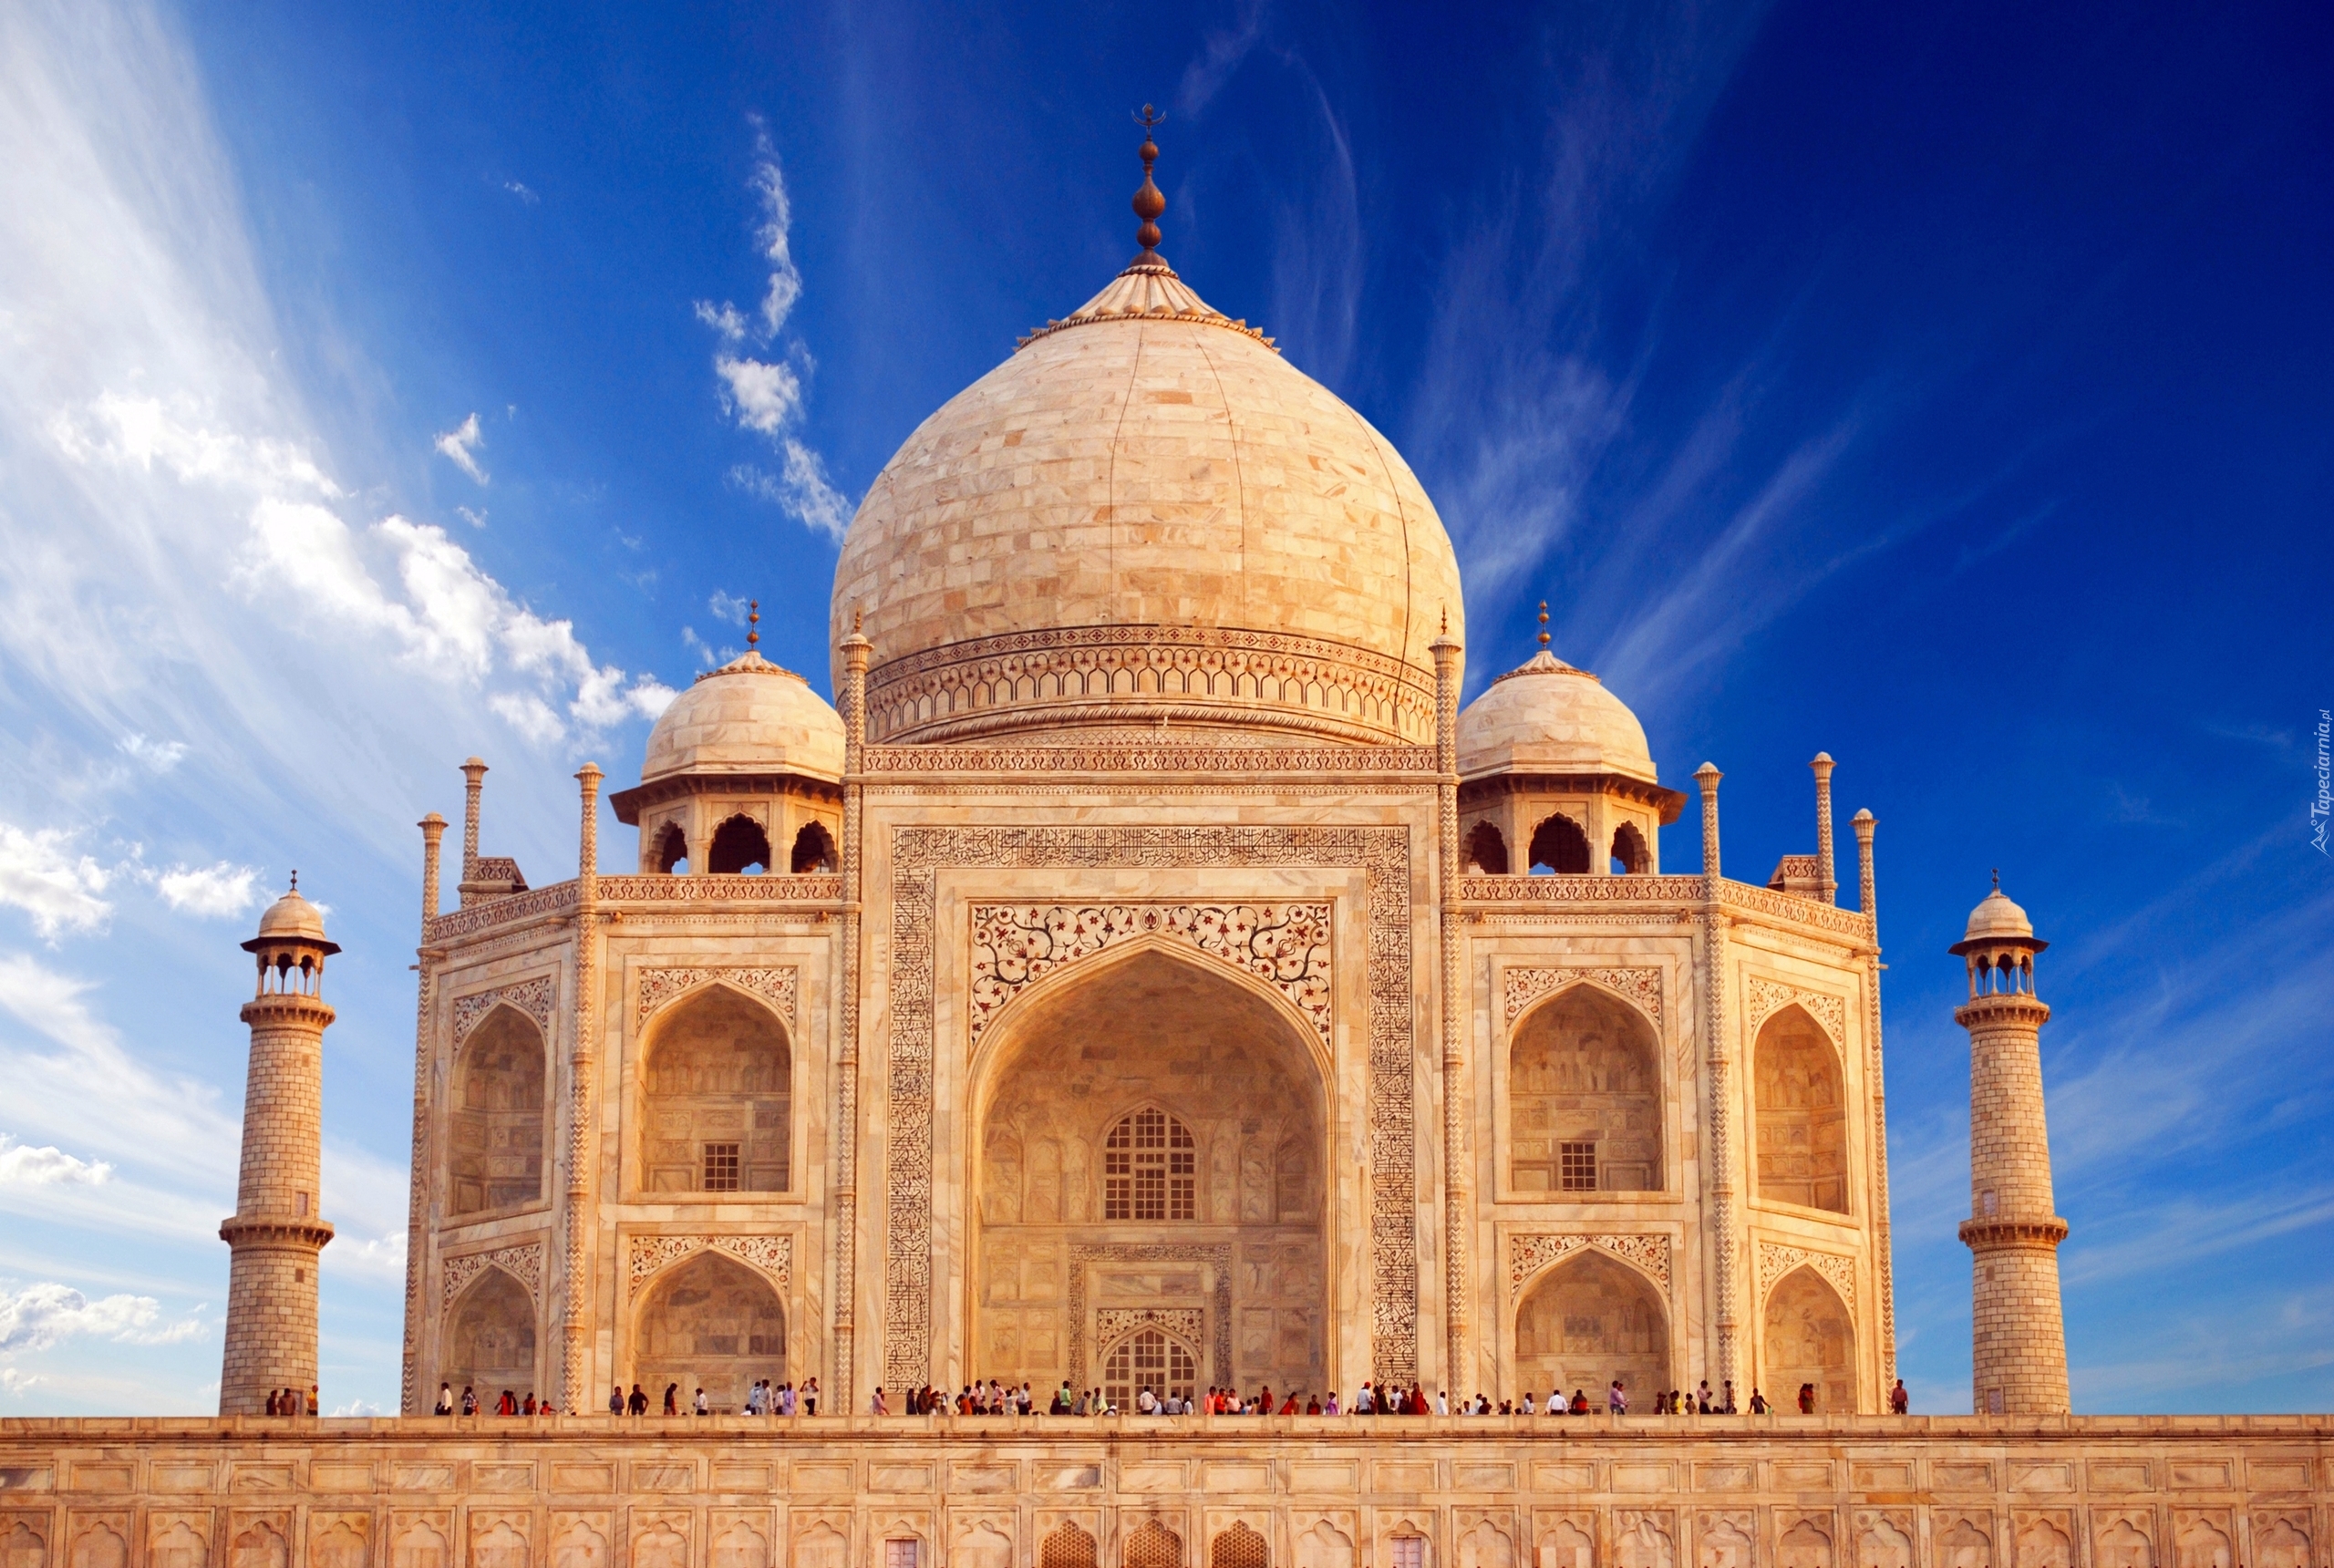 Tadż Mahal, Agra, Indie